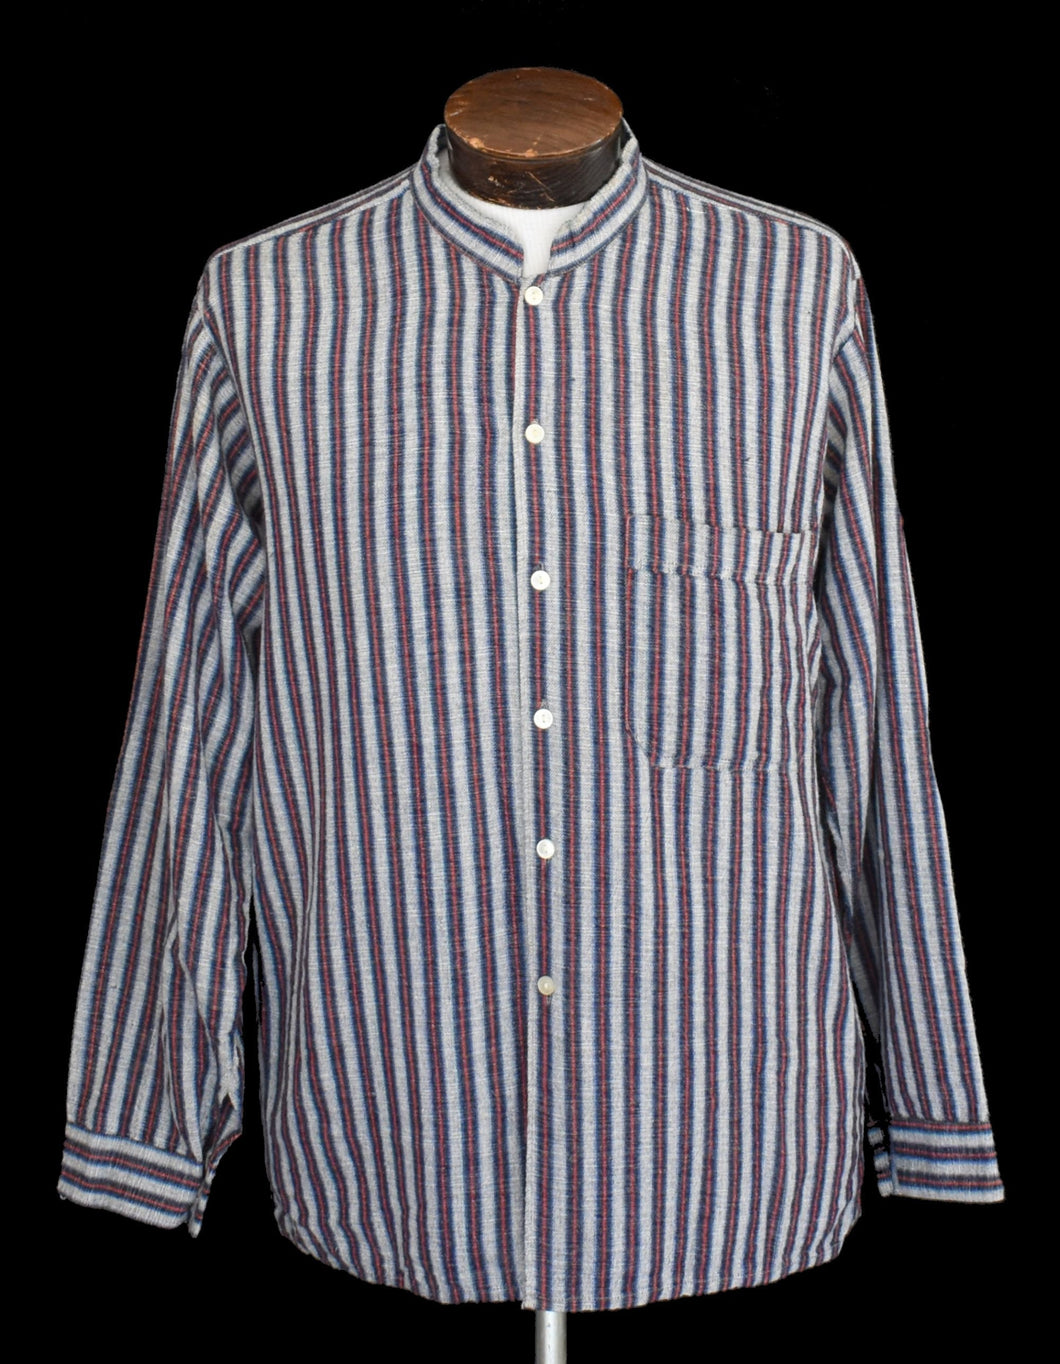 Vintage 90s Striped Ecuadorian Artesanias Cotton Shirt Size Medium to Large